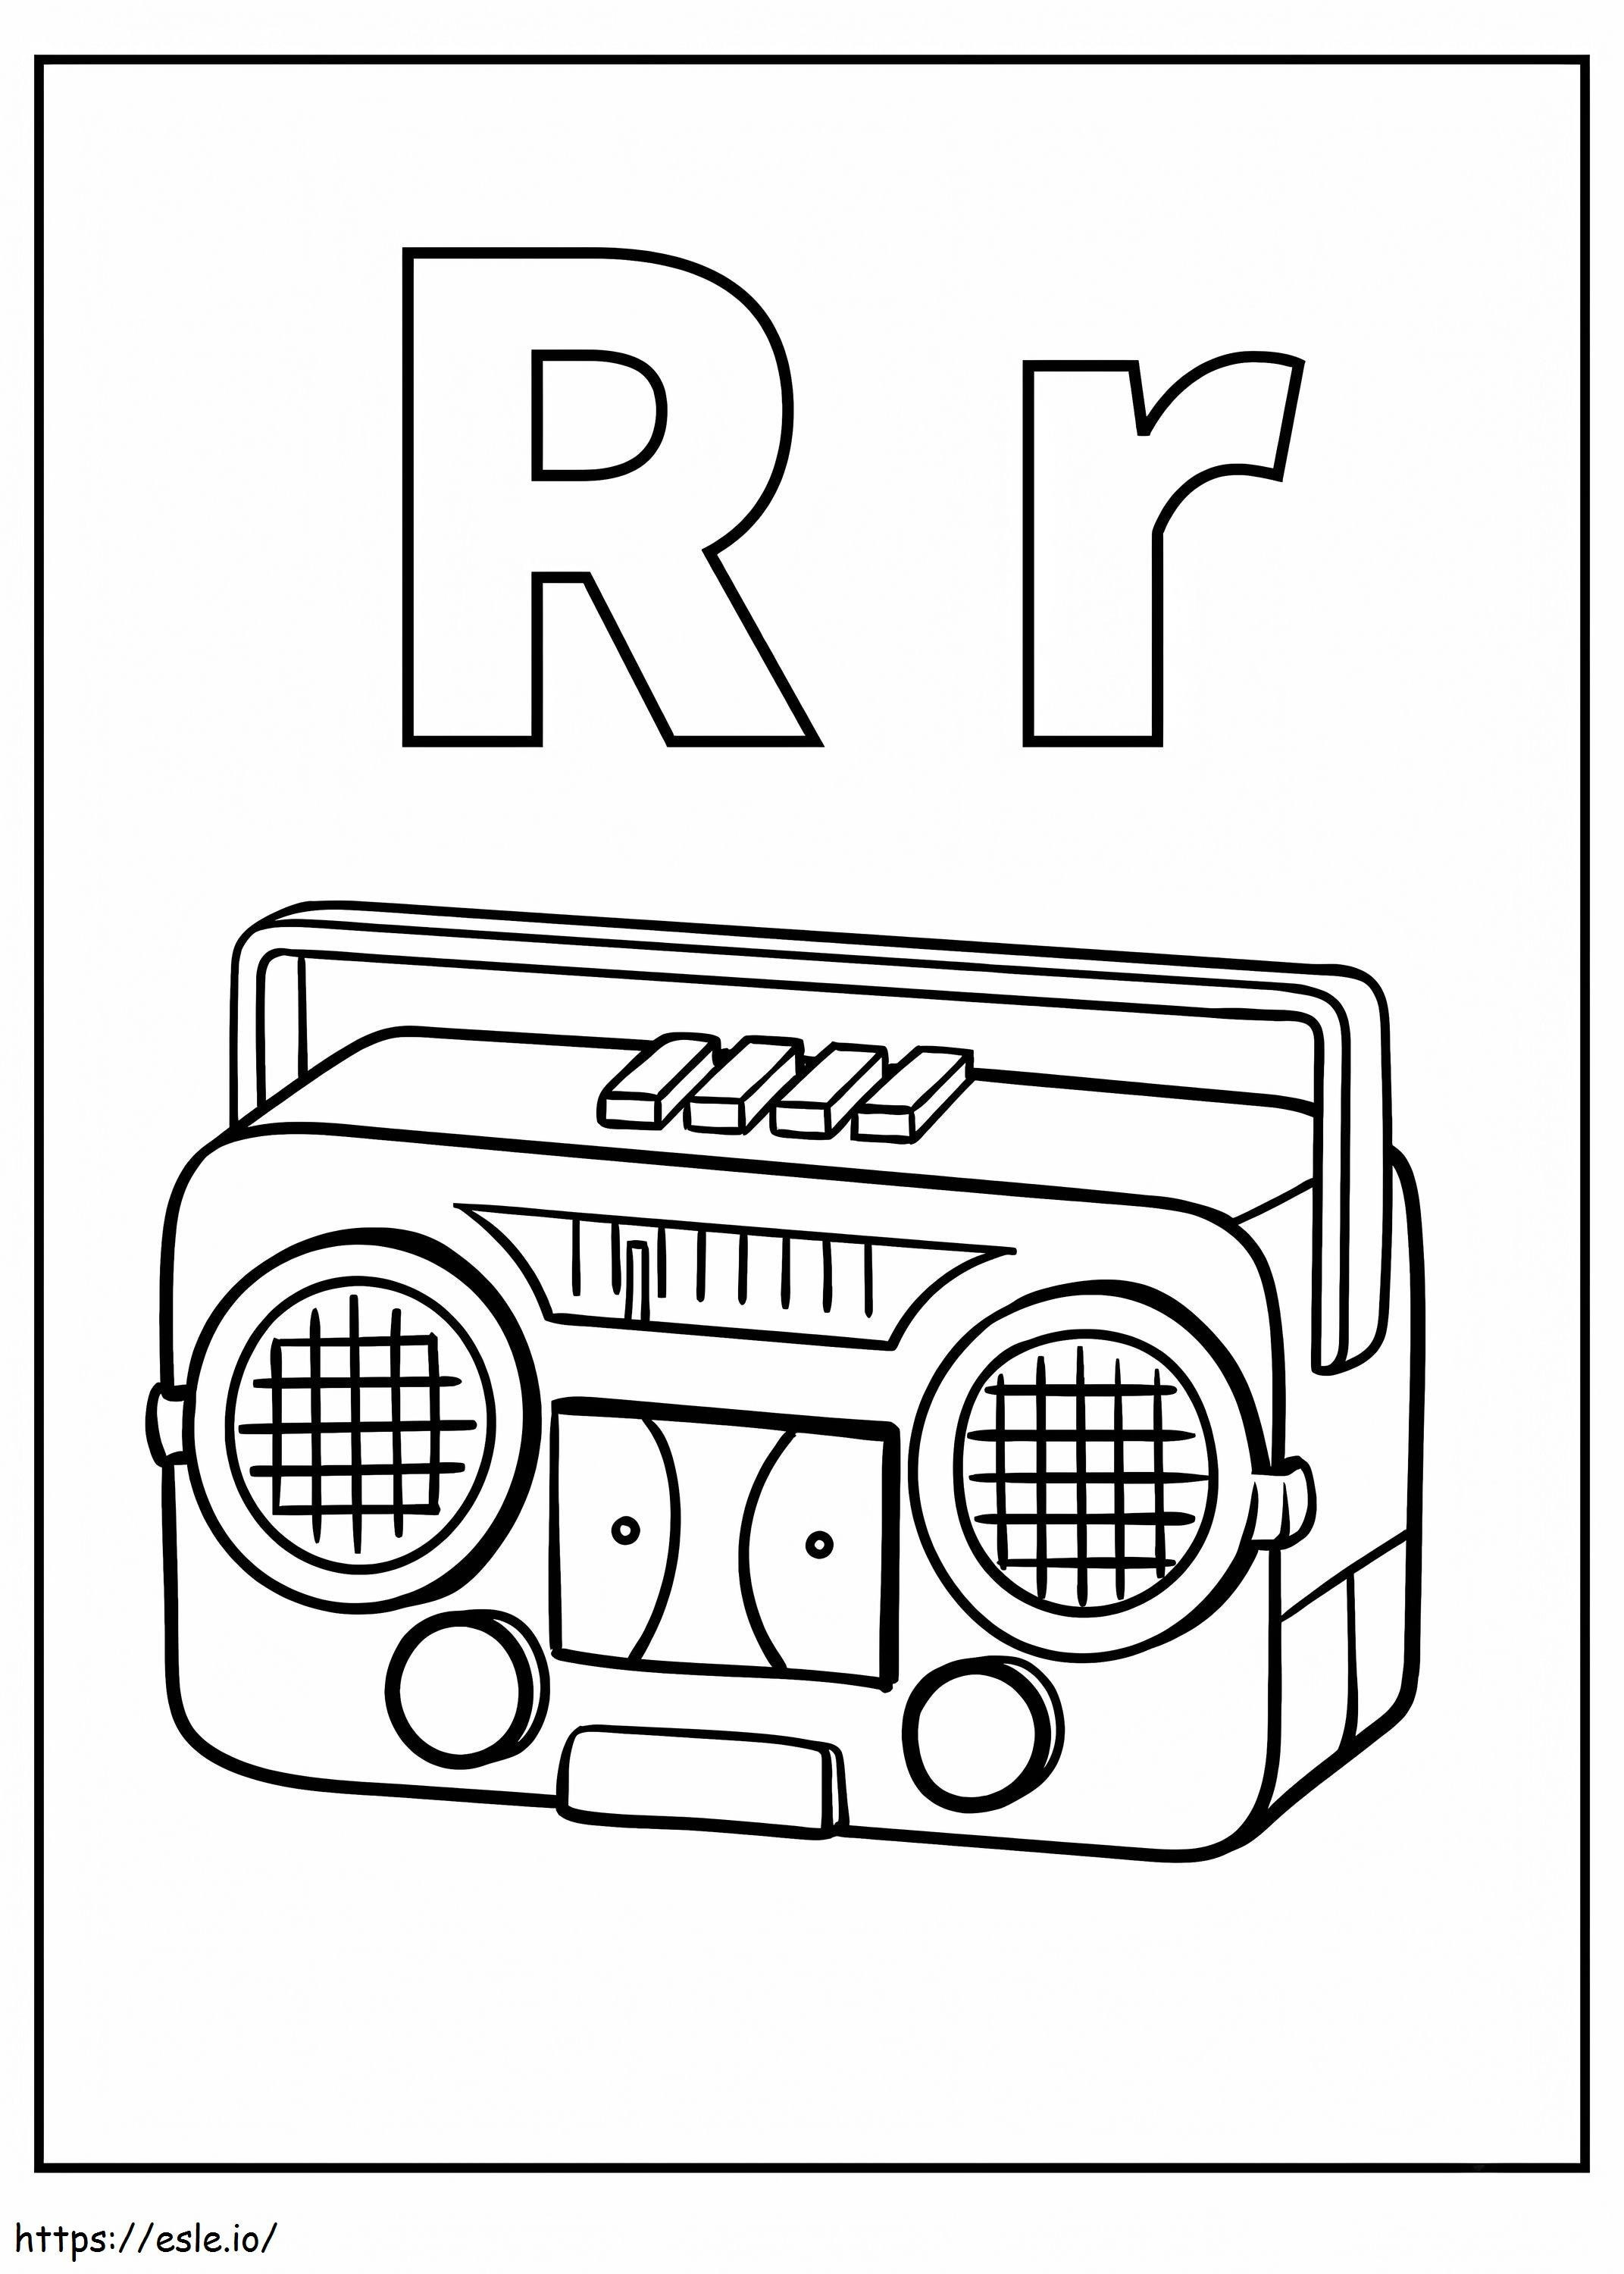 Buchstabe R und Radio ausmalbilder